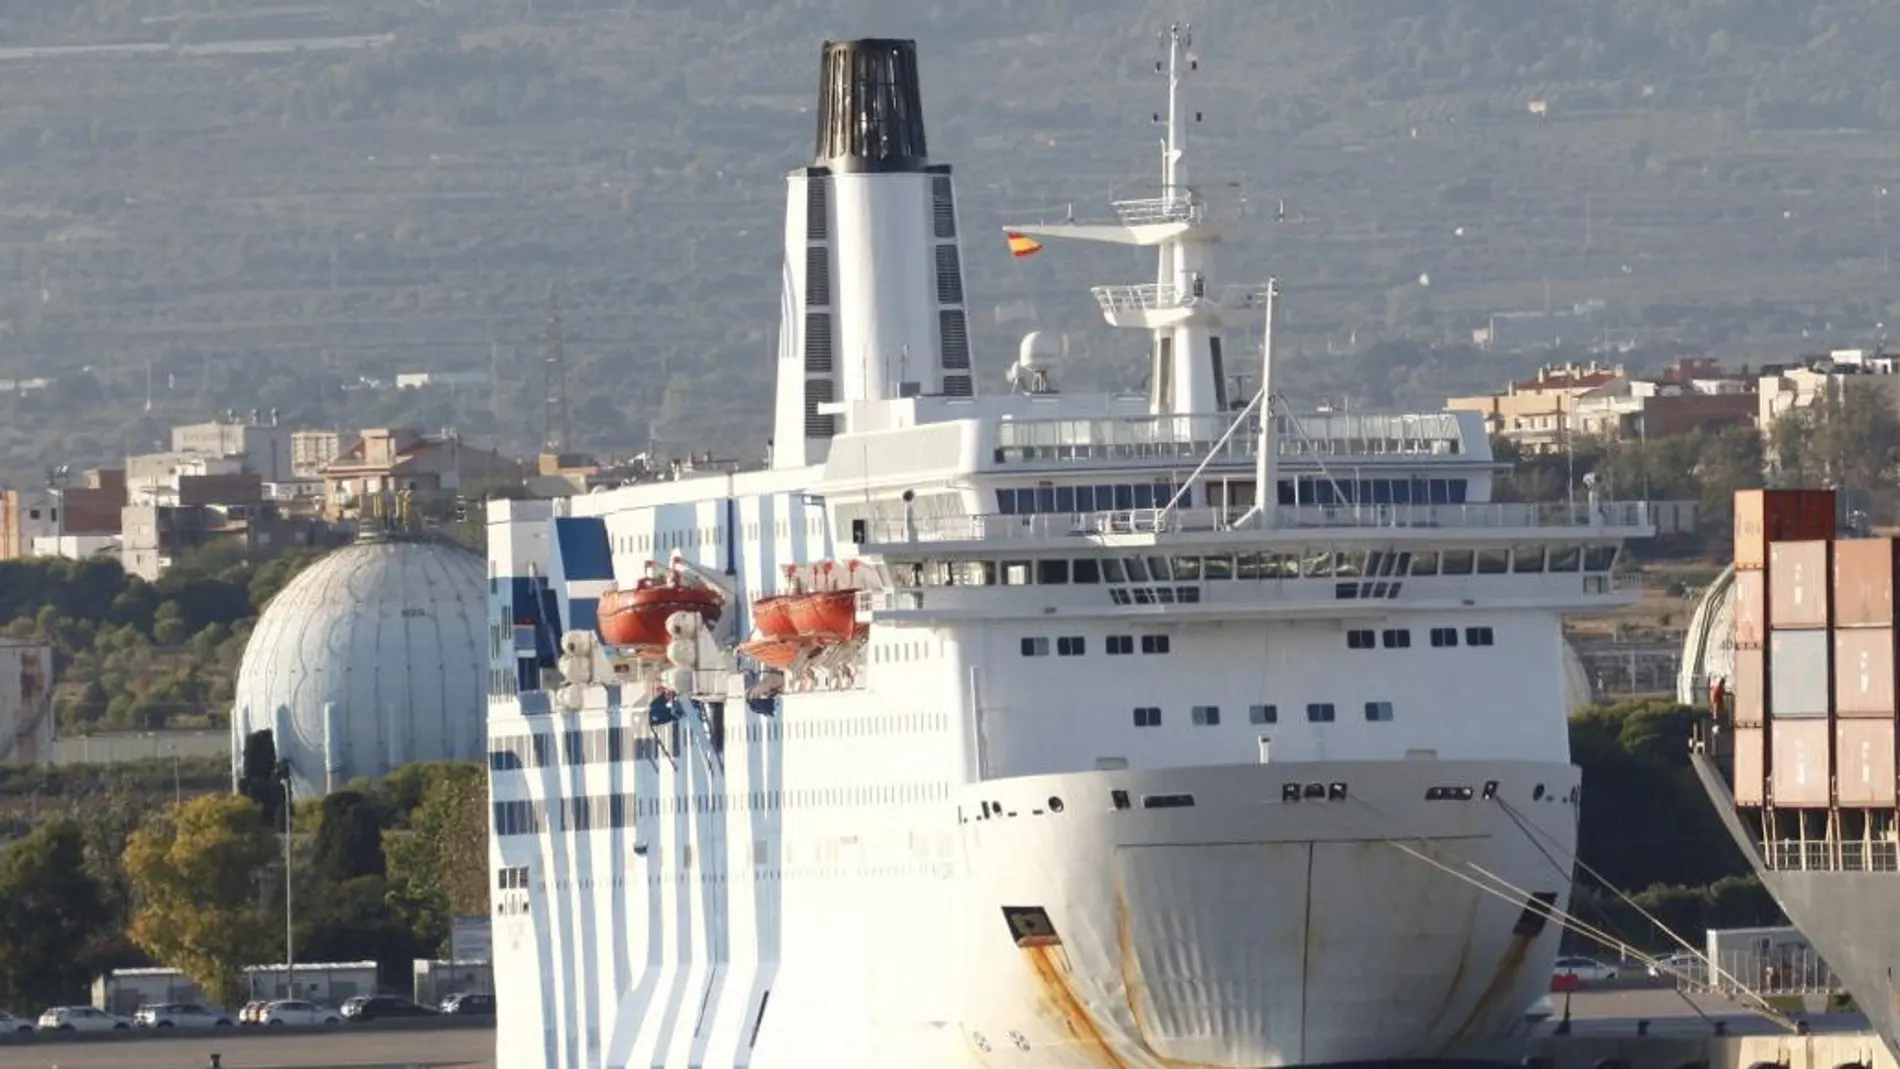 La embarcación atracada en el puerto de Tarragona para dar hospedaje y apoyo logístico al operativo de la Guardia Civil y la Policía Nacional en Cataluña